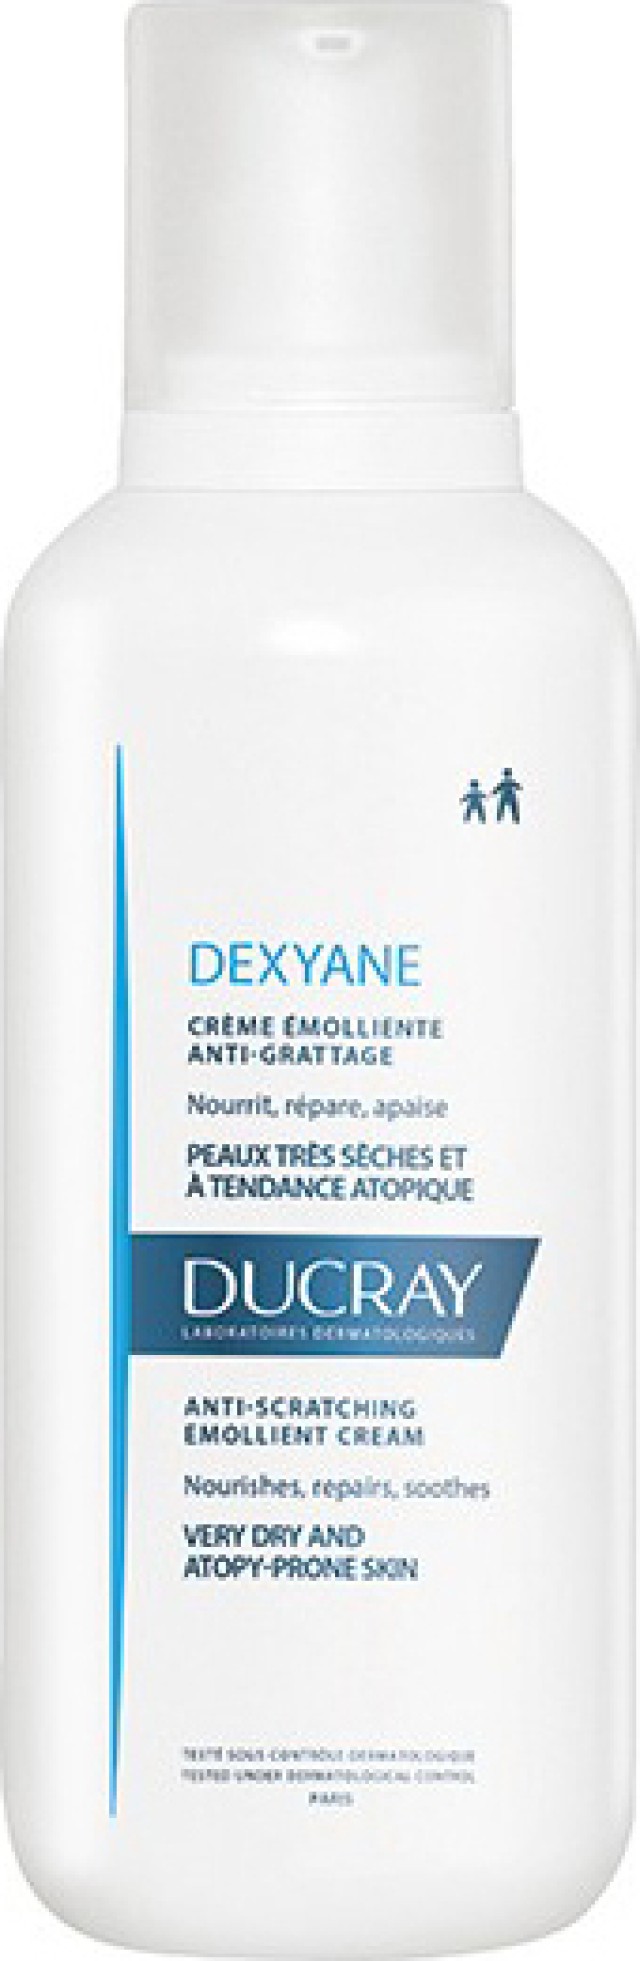 Ducray Dexyane Creme Emolliente Anti-Grattage 400ml